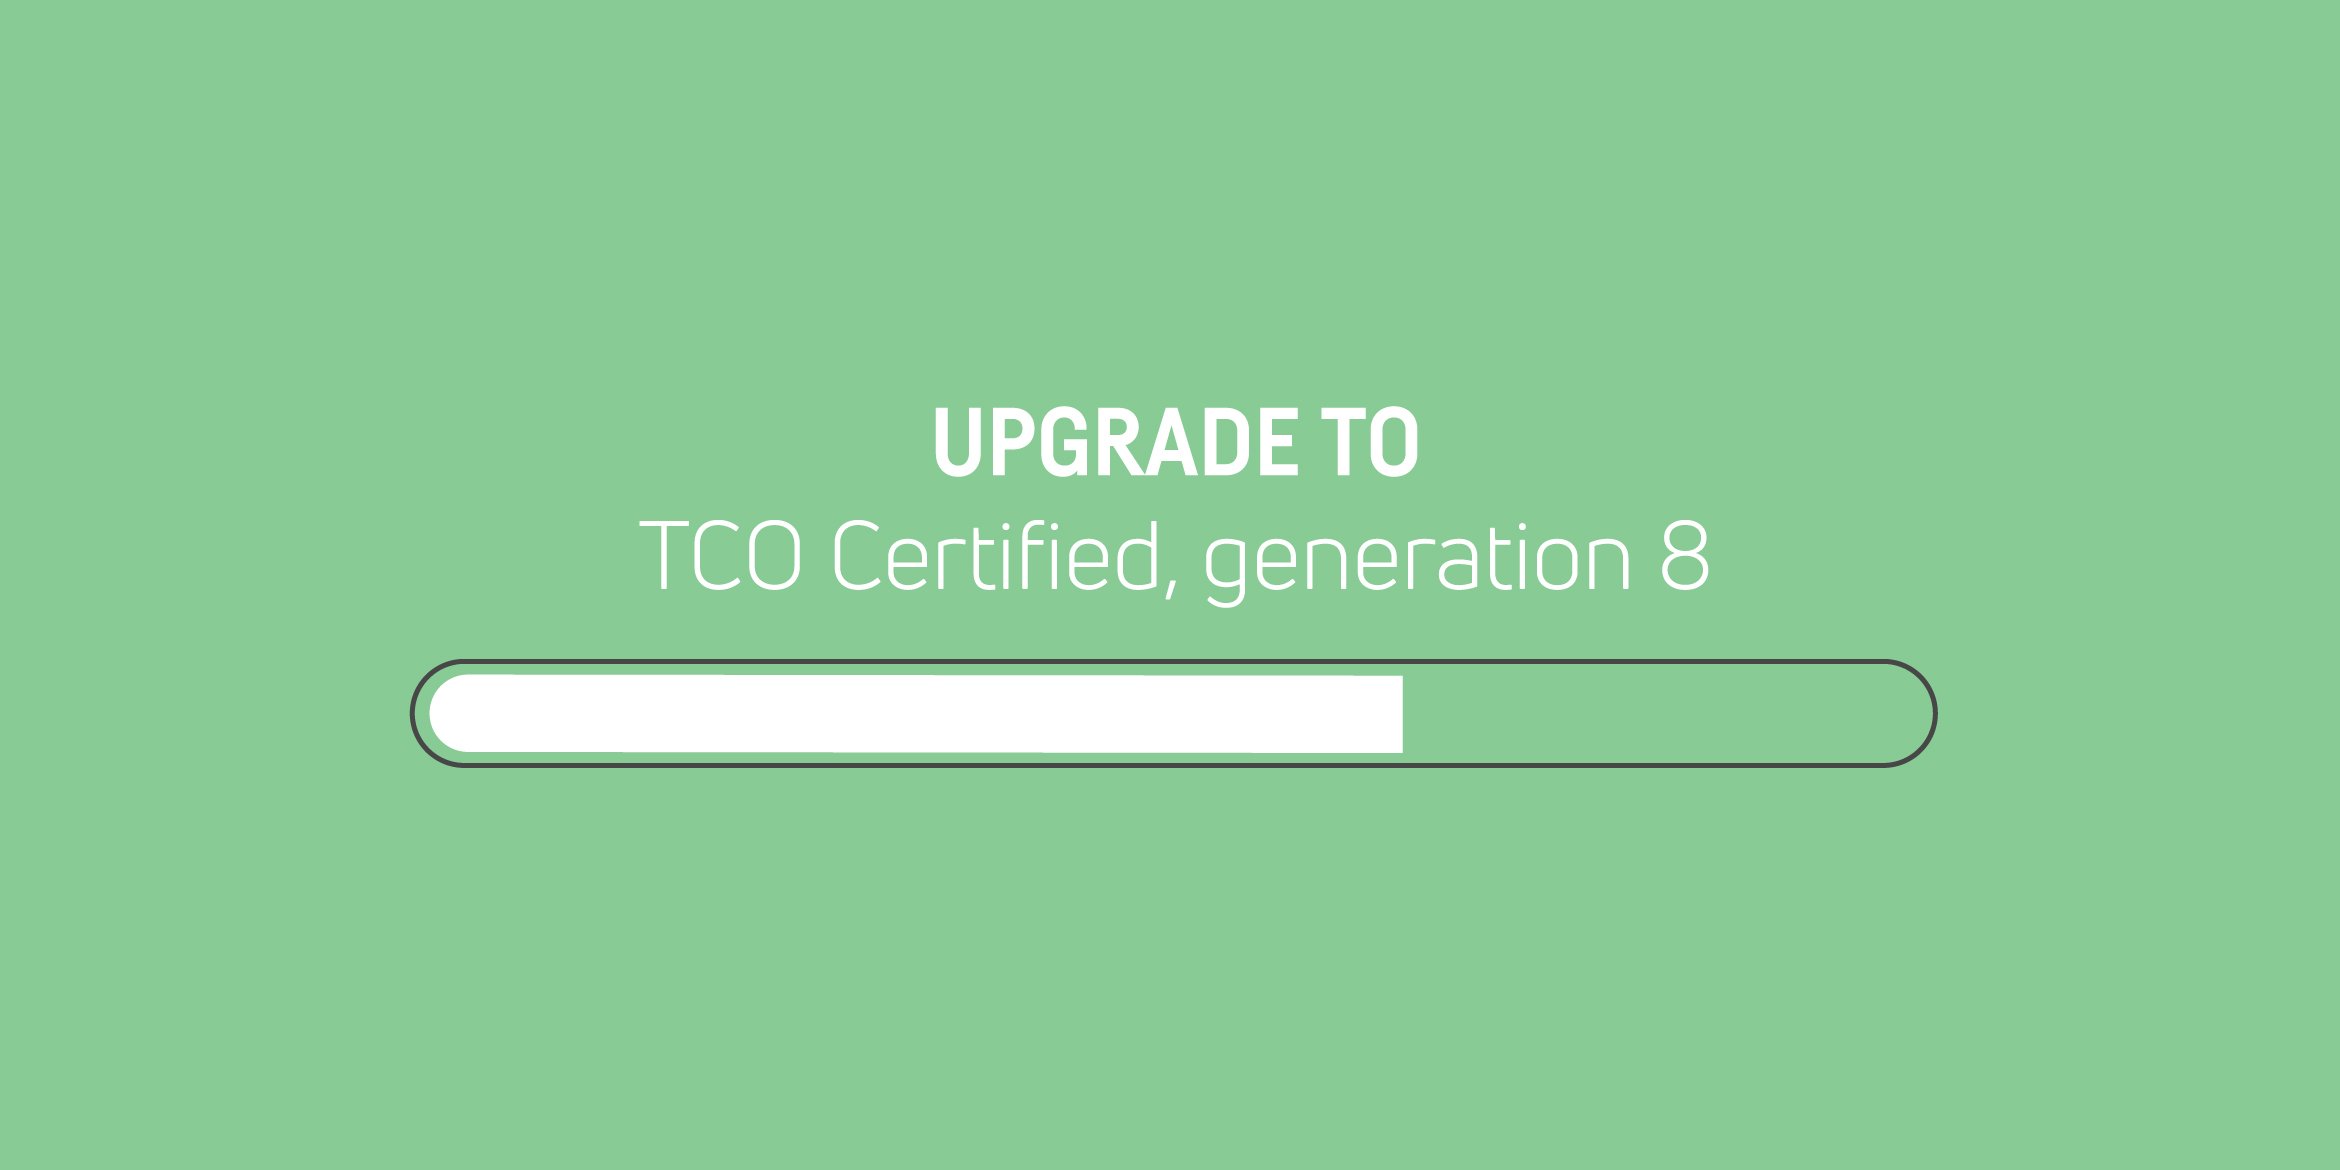 Die vorherige Generation von TCO Certified ist nicht mehr verfügbar - aktualisieren Sie Ihre Zertifikate